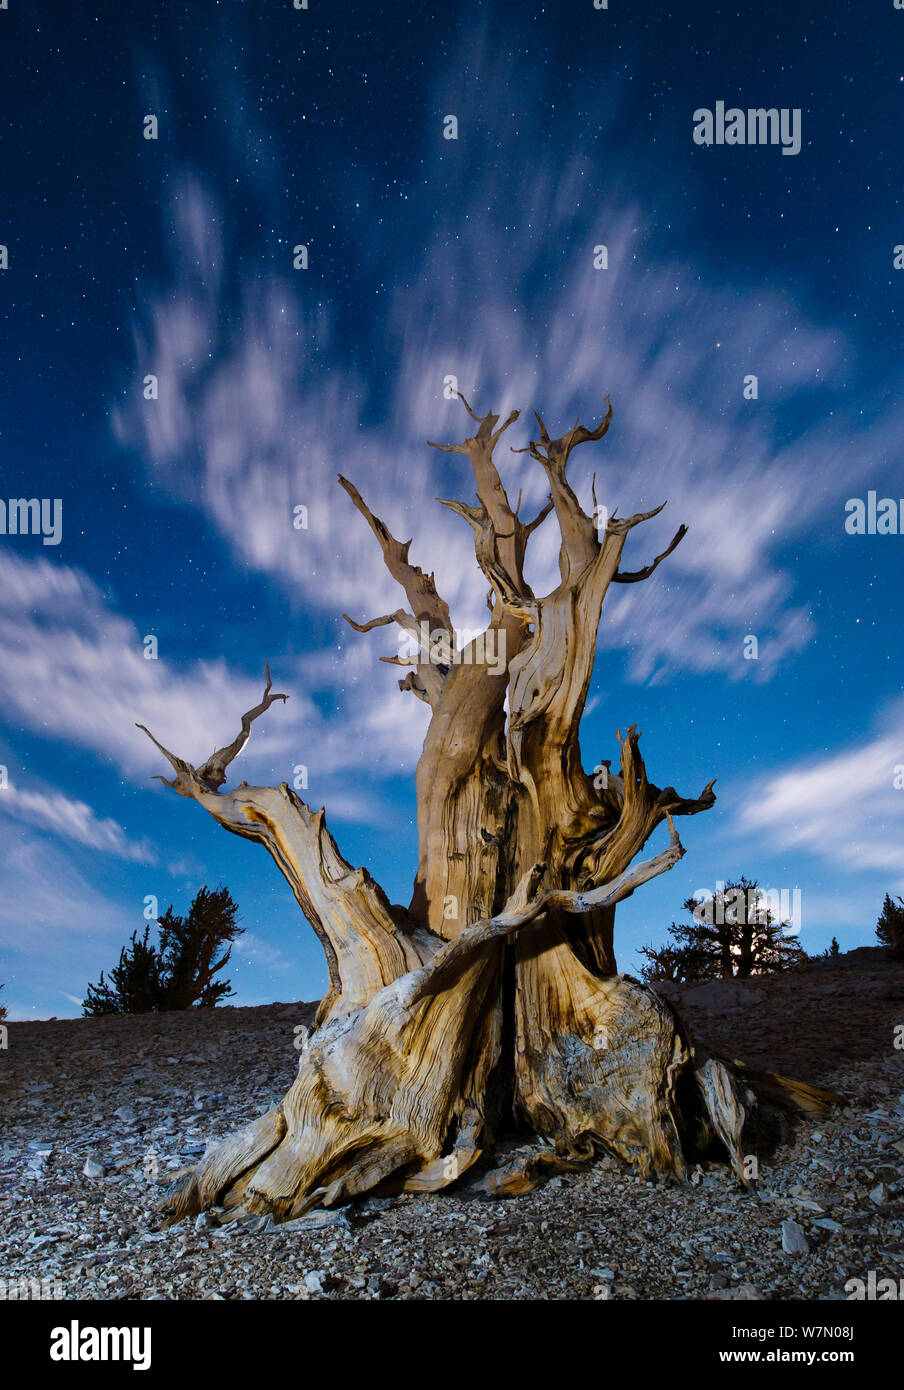 Nodose antica Bristlecone pine (Pinus longaeva) illuminato dalla luna piena e star light, White Mountains Patriarca Grove, Inyo National Forest, California, Stati Uniti d'America Foto Stock